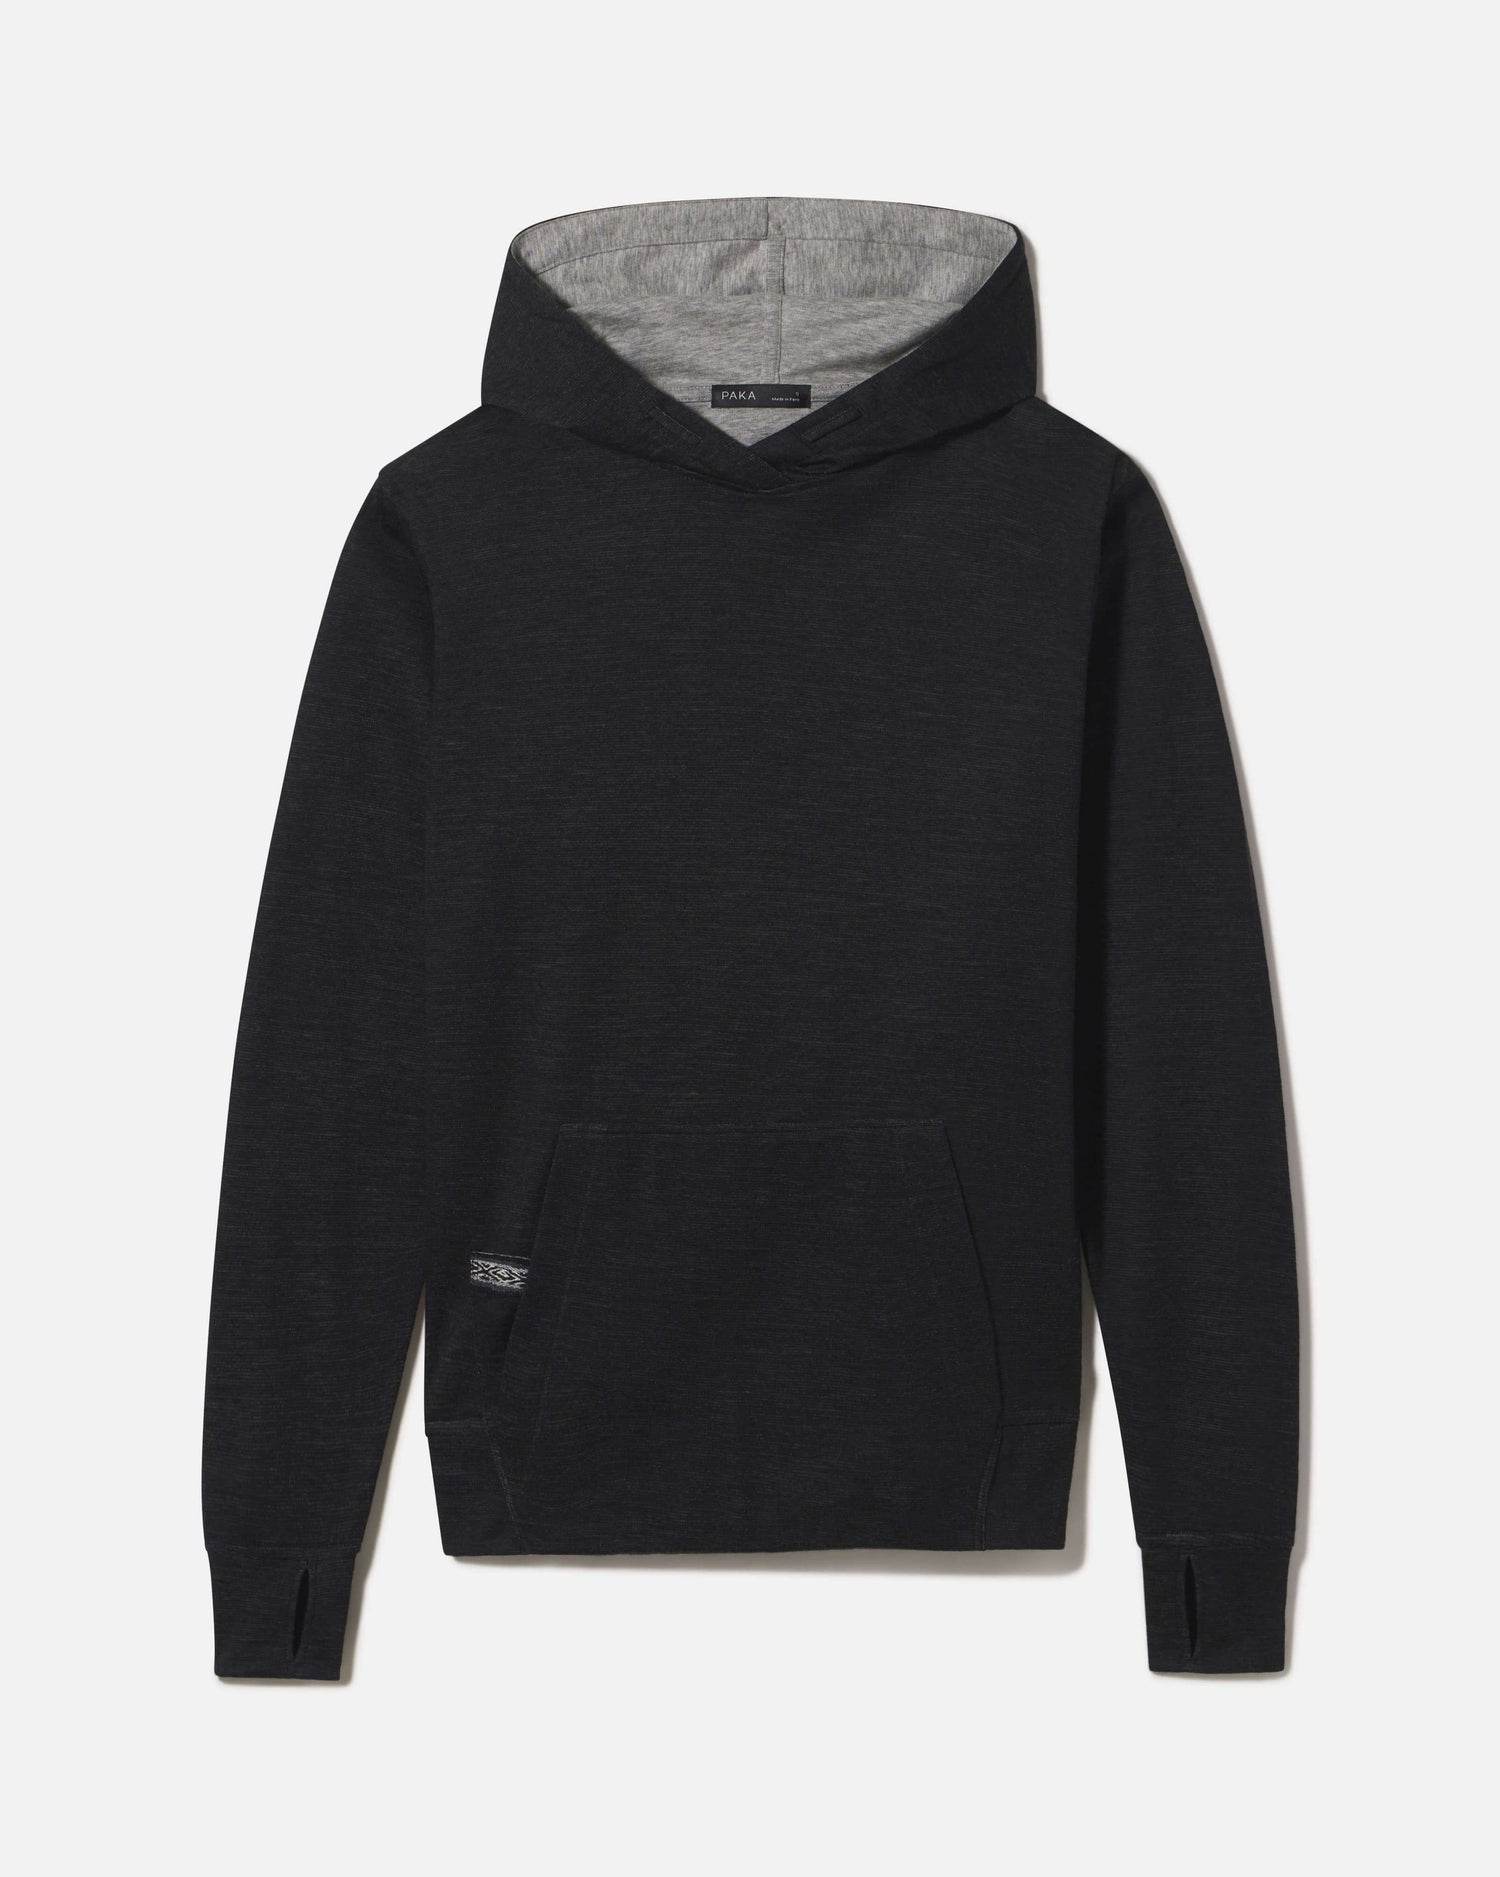 Louis Vuitton Cotton Regular Size Hoodies & Sweatshirts for Men for Sale, Shop Men's Athletic Clothes